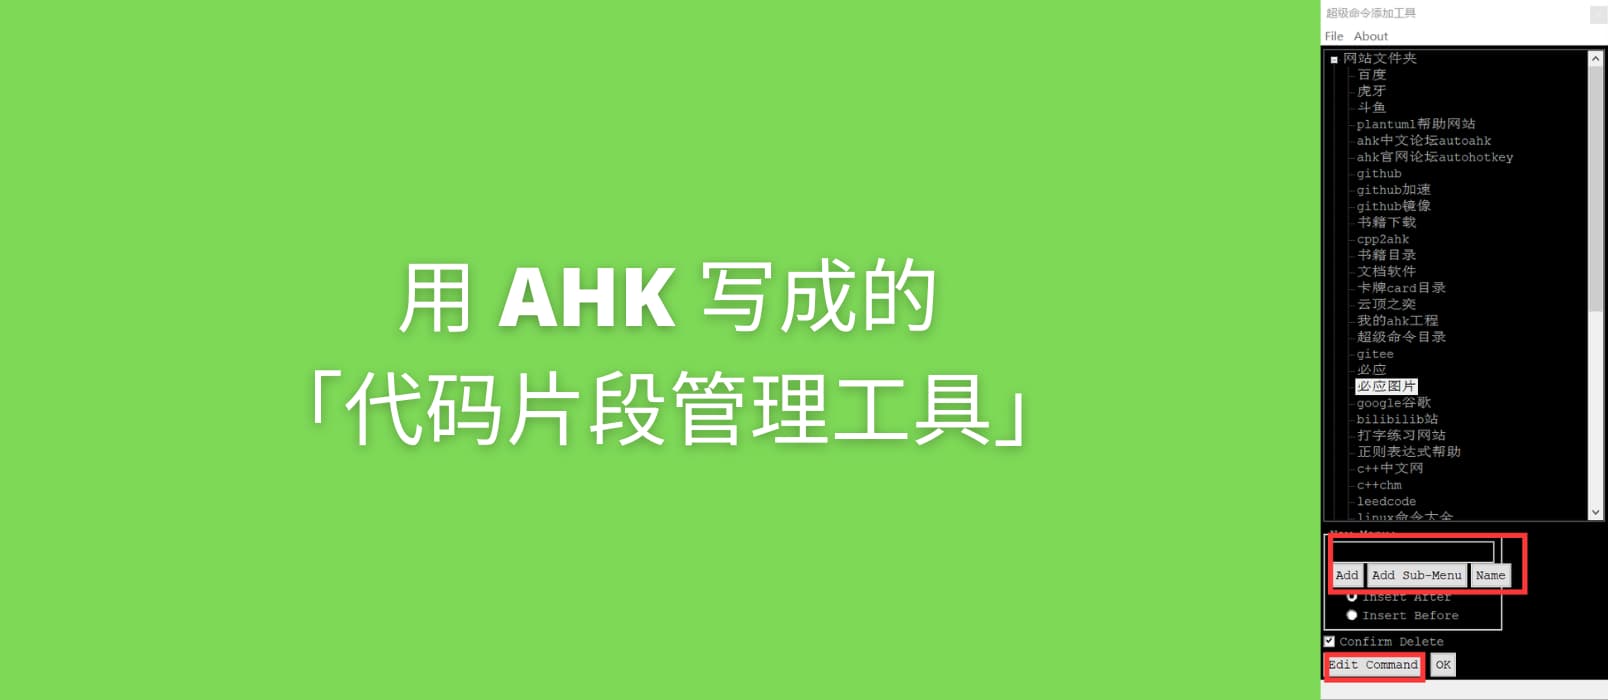 用 AHK 写成的「代码片段管理工具」